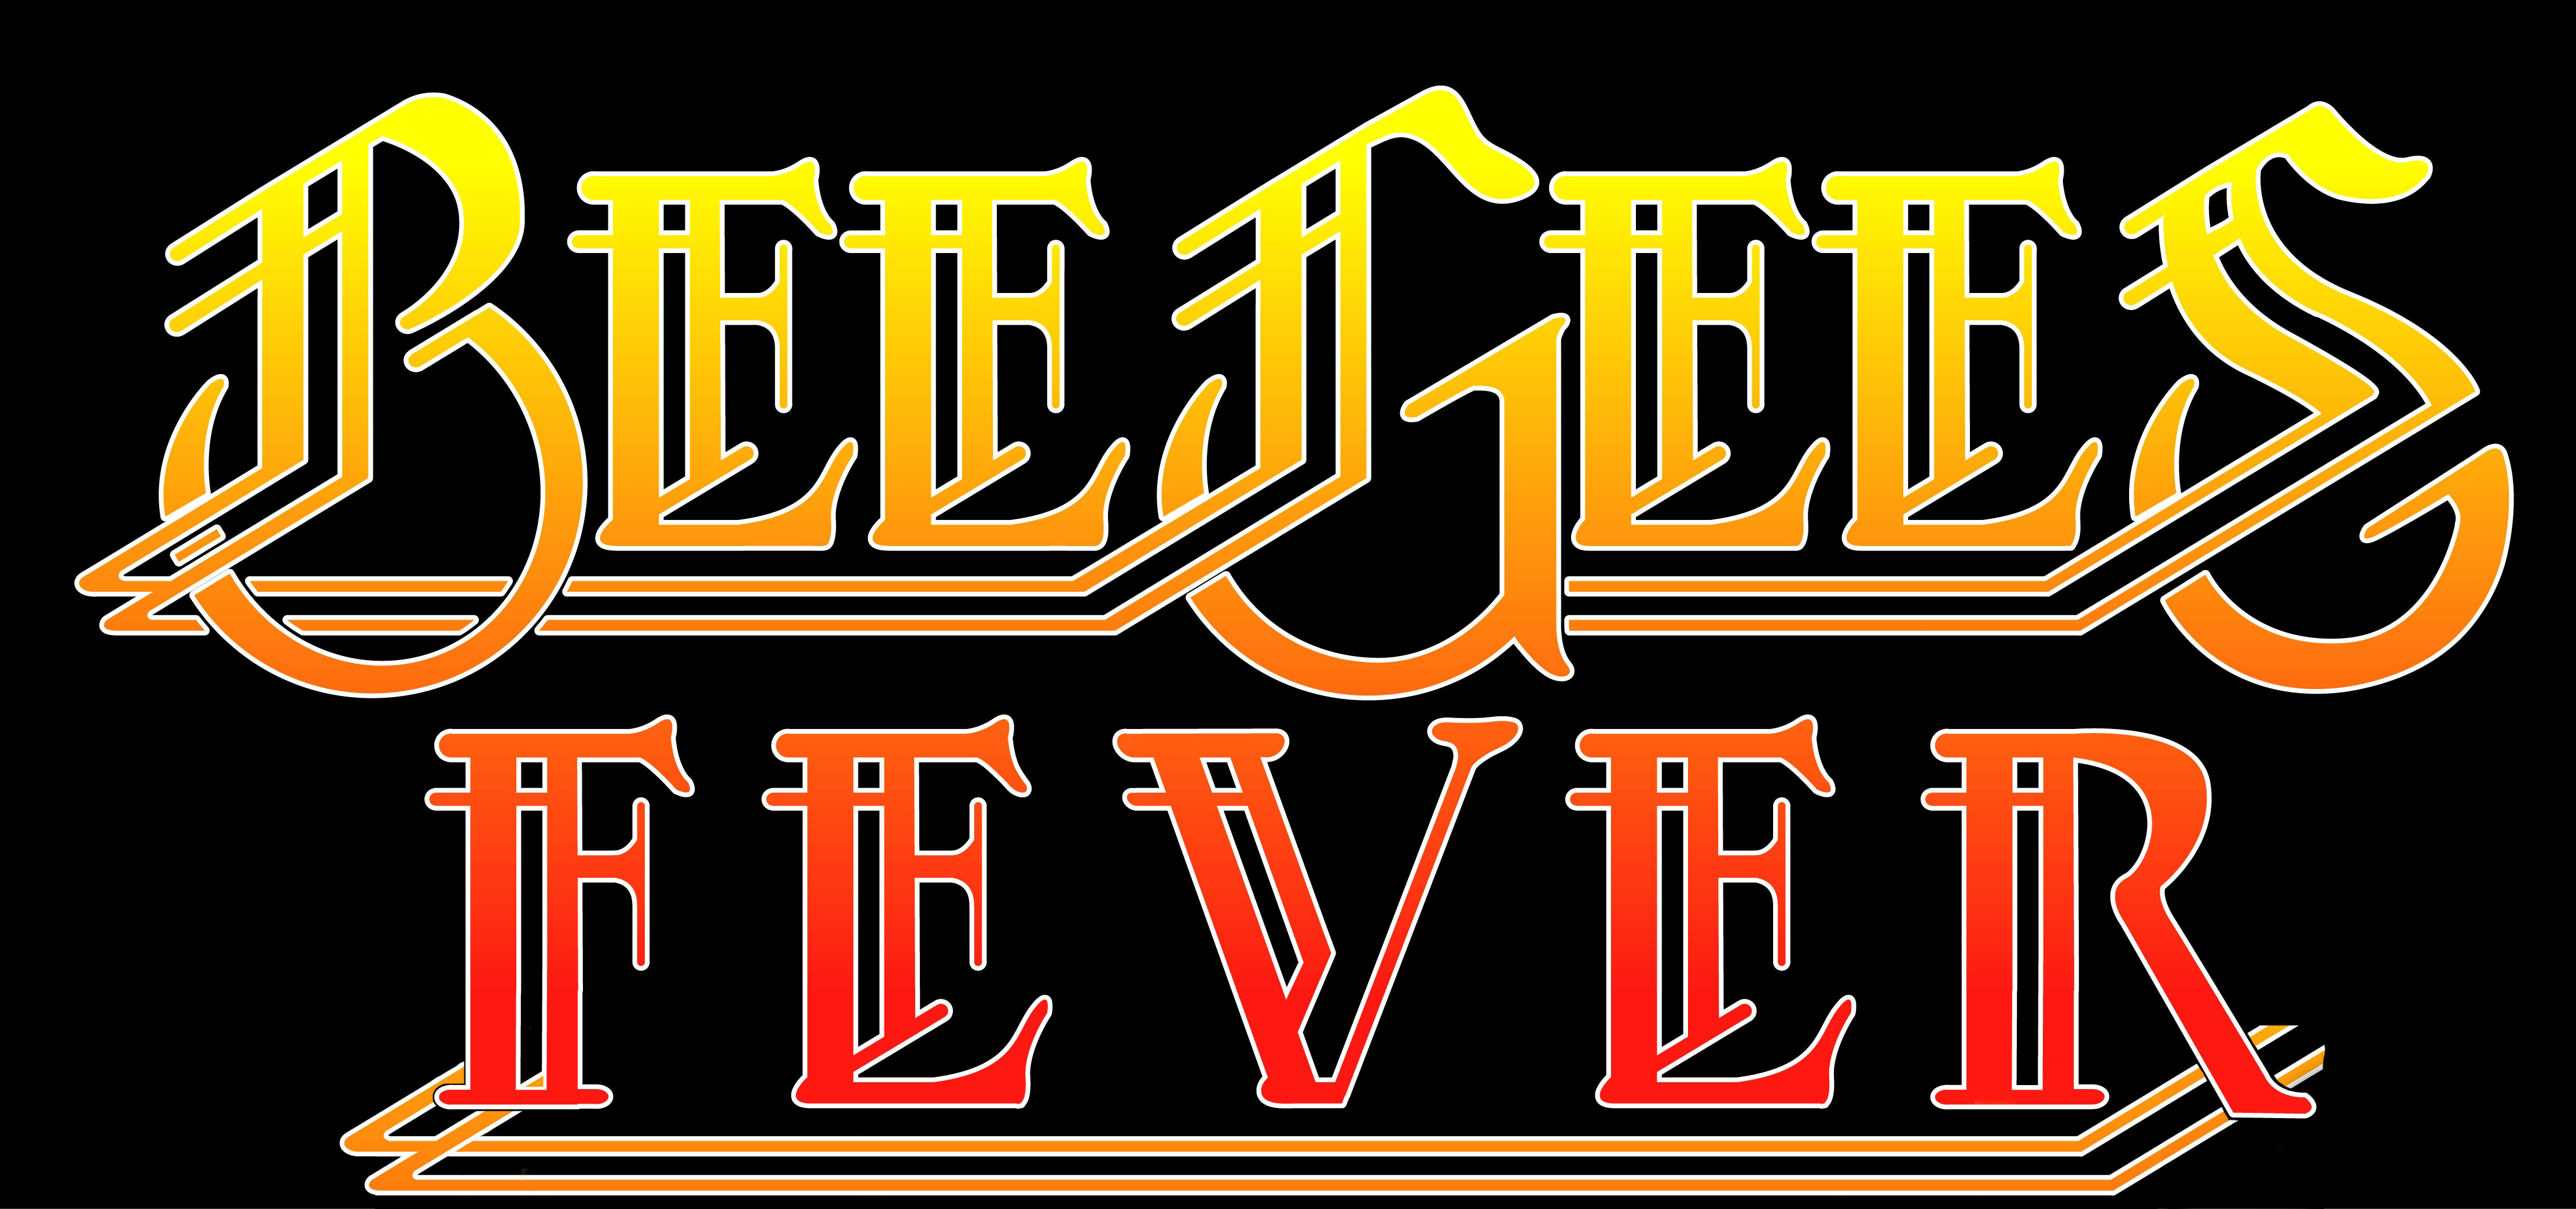 Top Bee Gees Logo Wallpaper